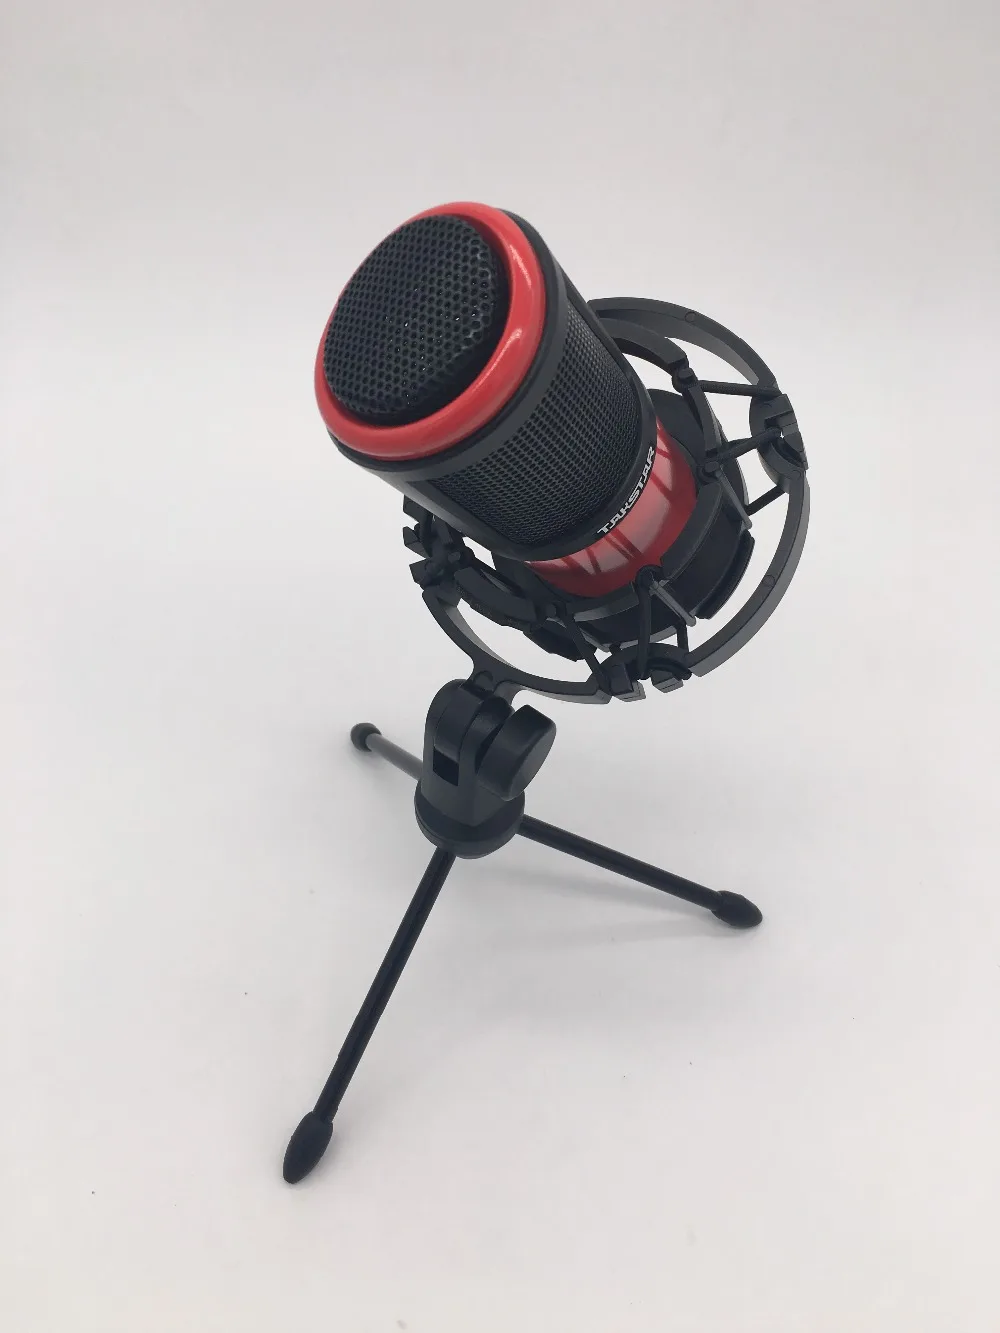 Takstar PC-K320 микрофон с боковым адресом, конденсаторный микрофон, ПК и сотовый телефон, караоке микрофон для вещания, вокала и записи инструментов